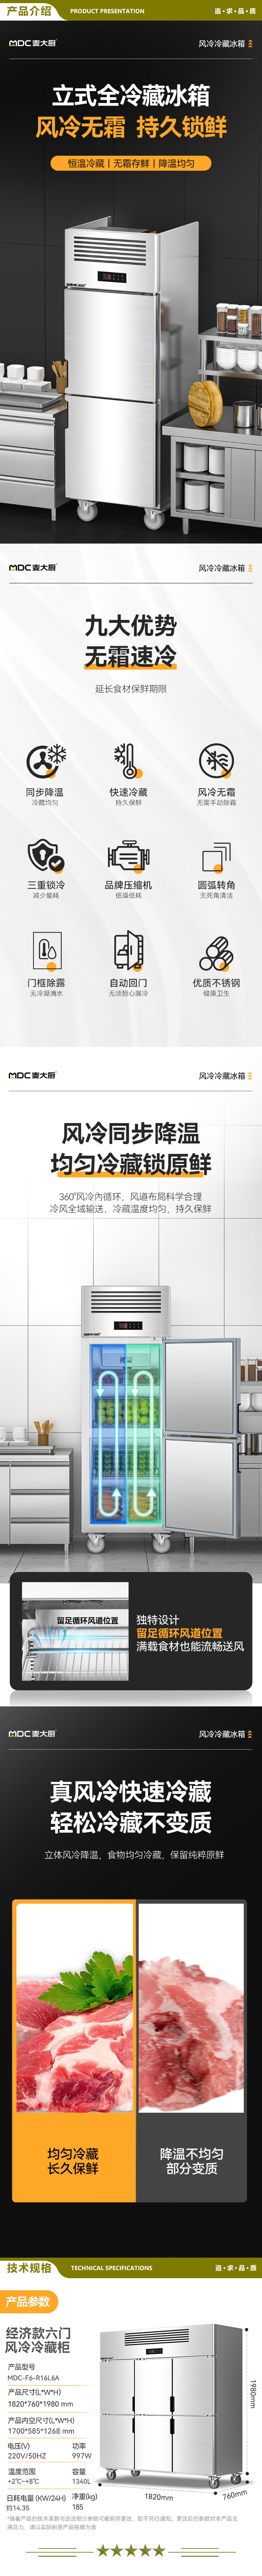 麦大厨 MDC-F6-R16L6A 六门冰箱商用冰柜不锈钢立式厨房饭店酒店风冷冷藏大容量保鲜冰箱   2.jpg